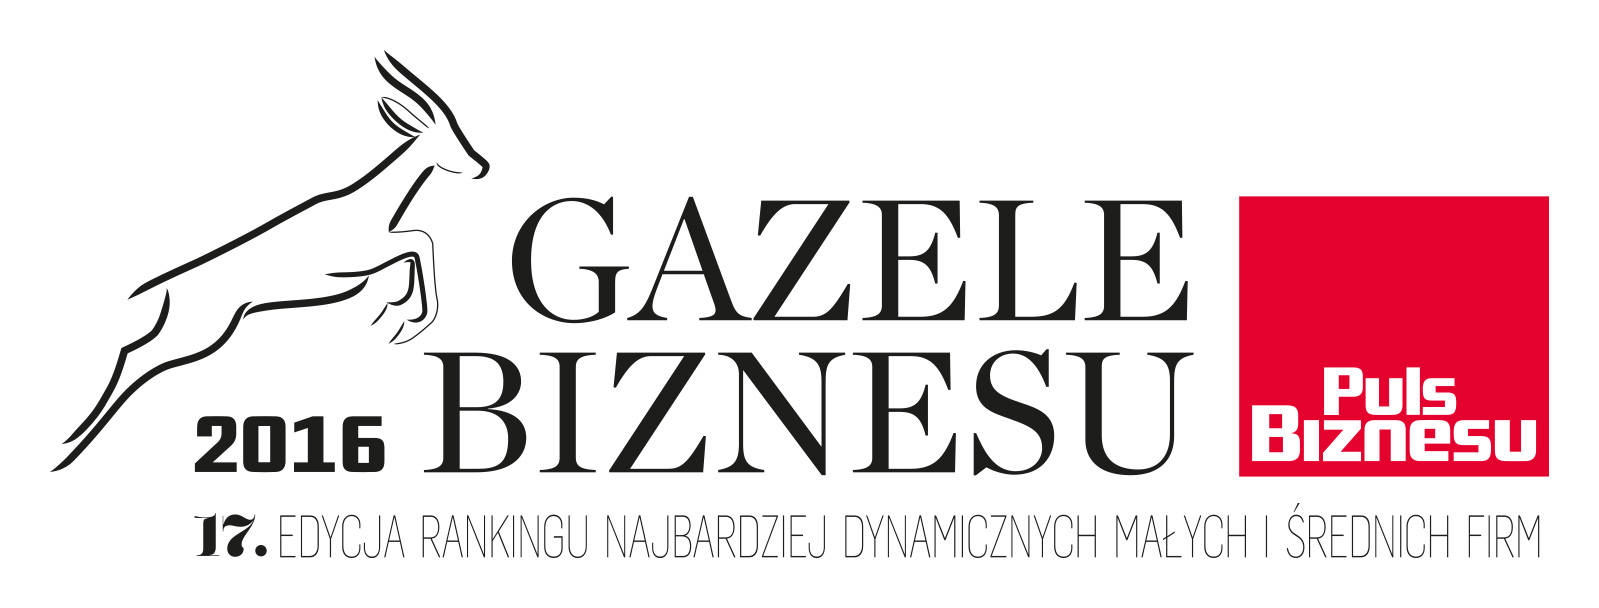 Gazelee Biznesu 2016